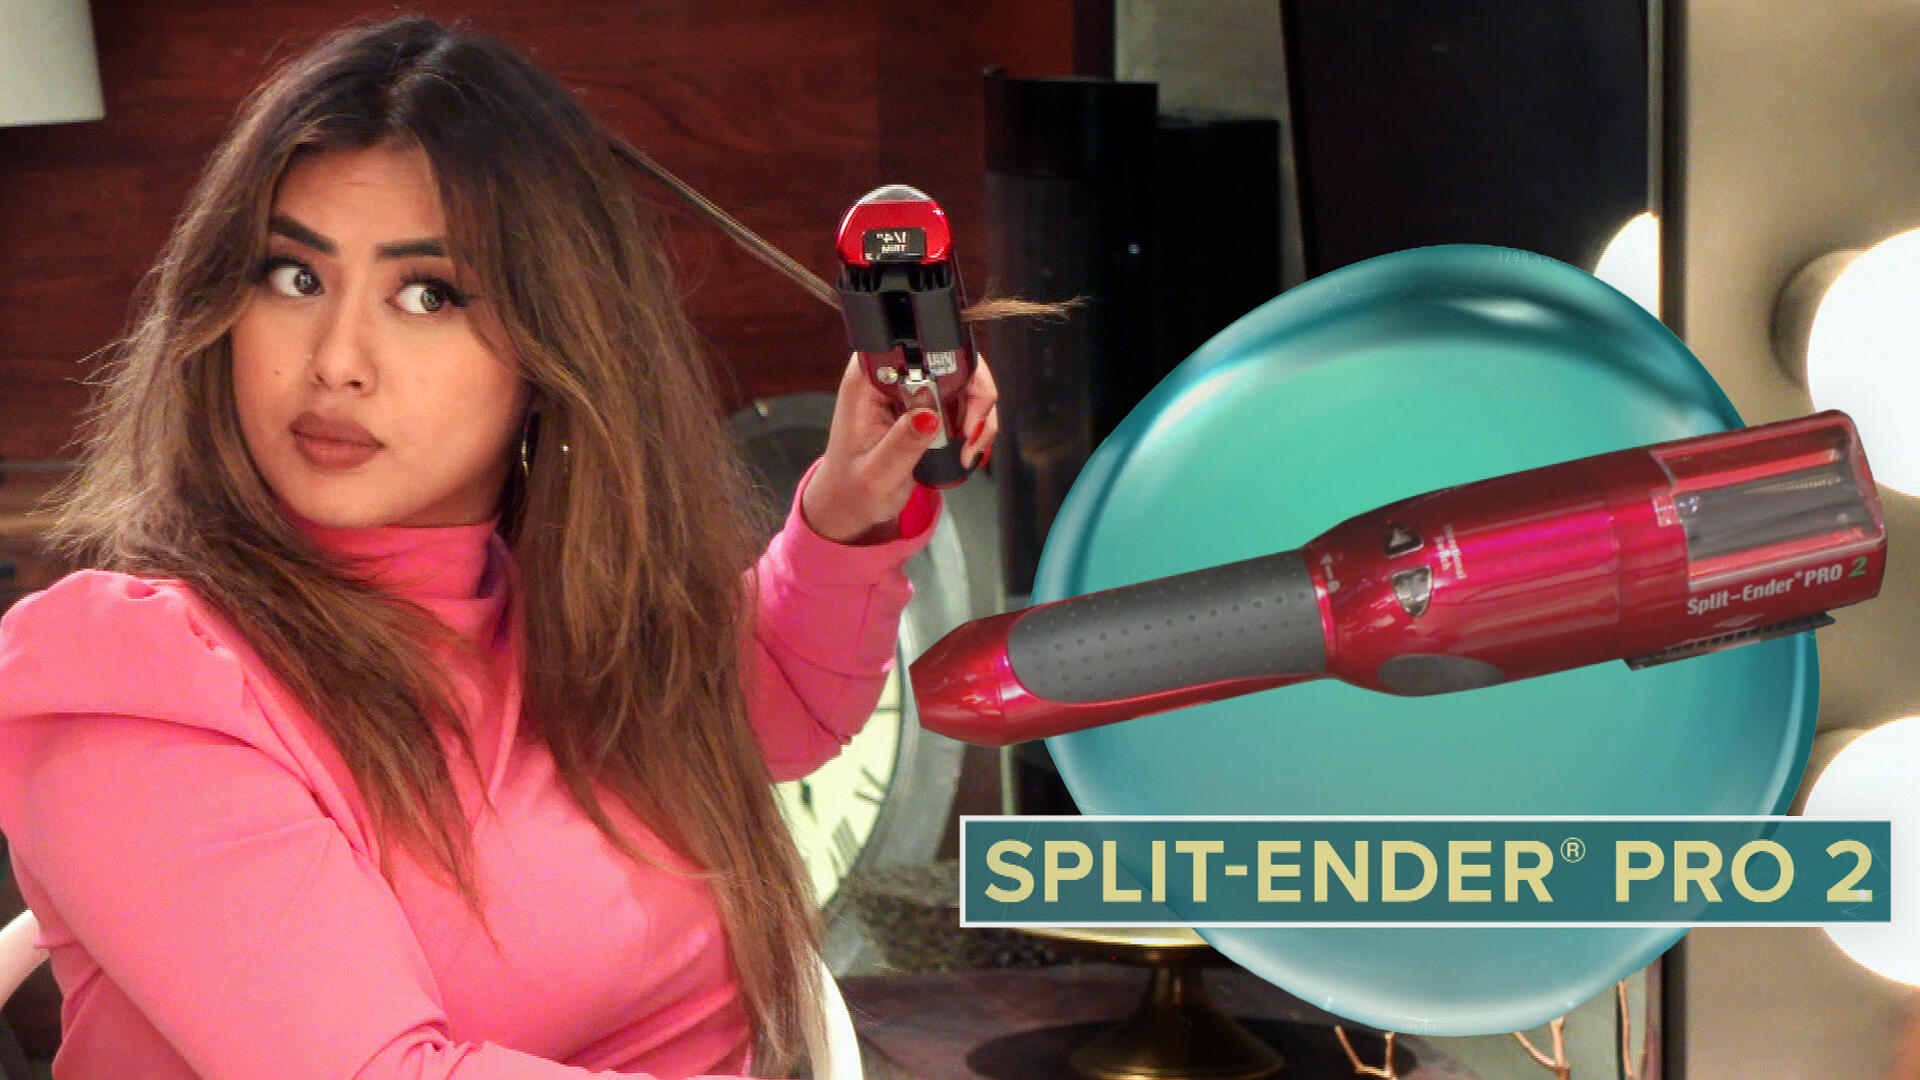 Split Ender Pro - for worn hair and split ends